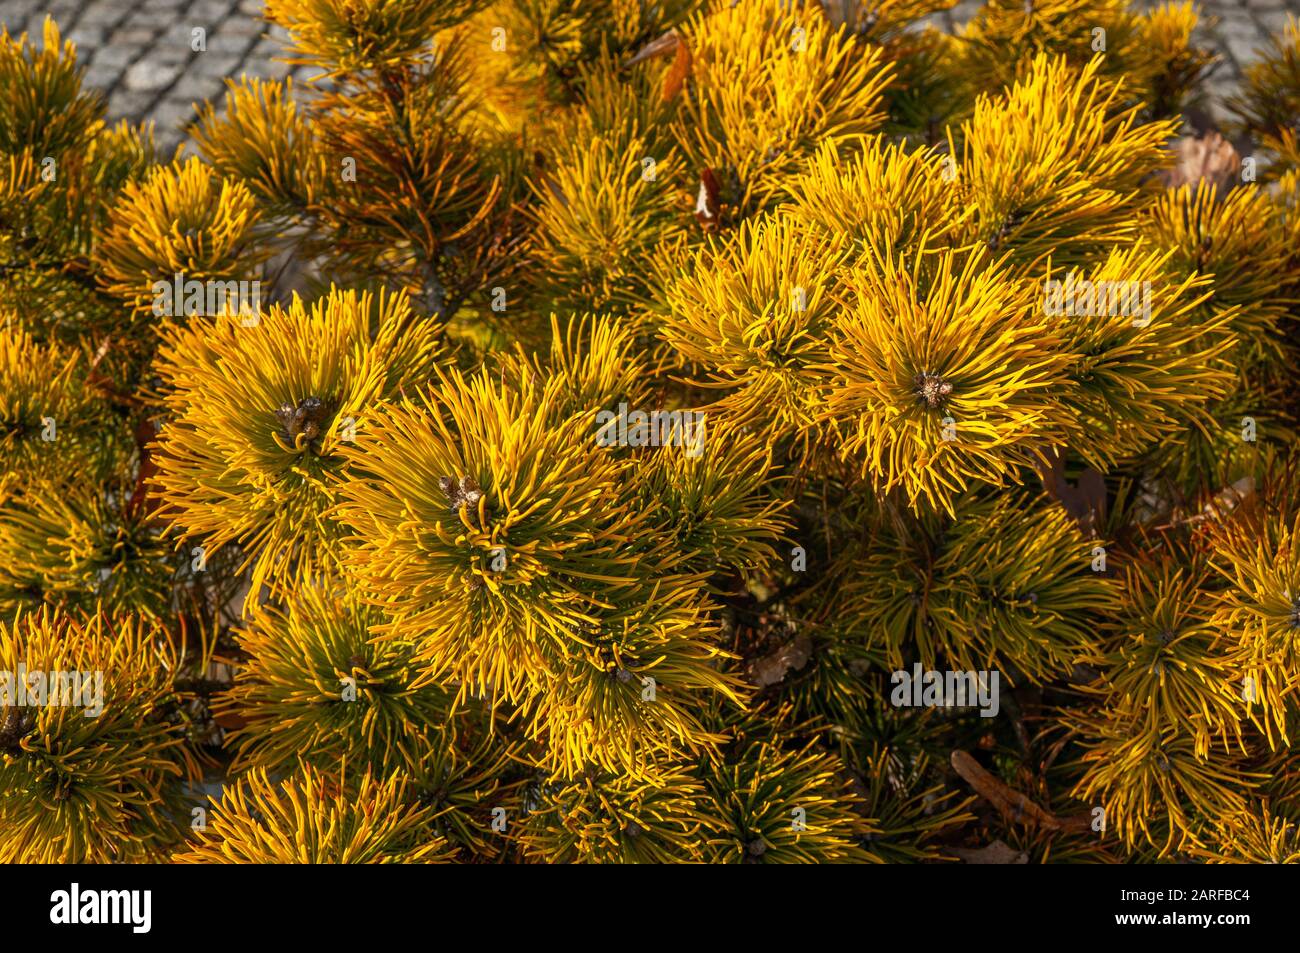 Leuchtend gelbe Tannennadeln an Nadelbäumen in einem zum Licht hin wachsenden Cluster. Pinus virginiana 'Wate's Golden' Stockfoto